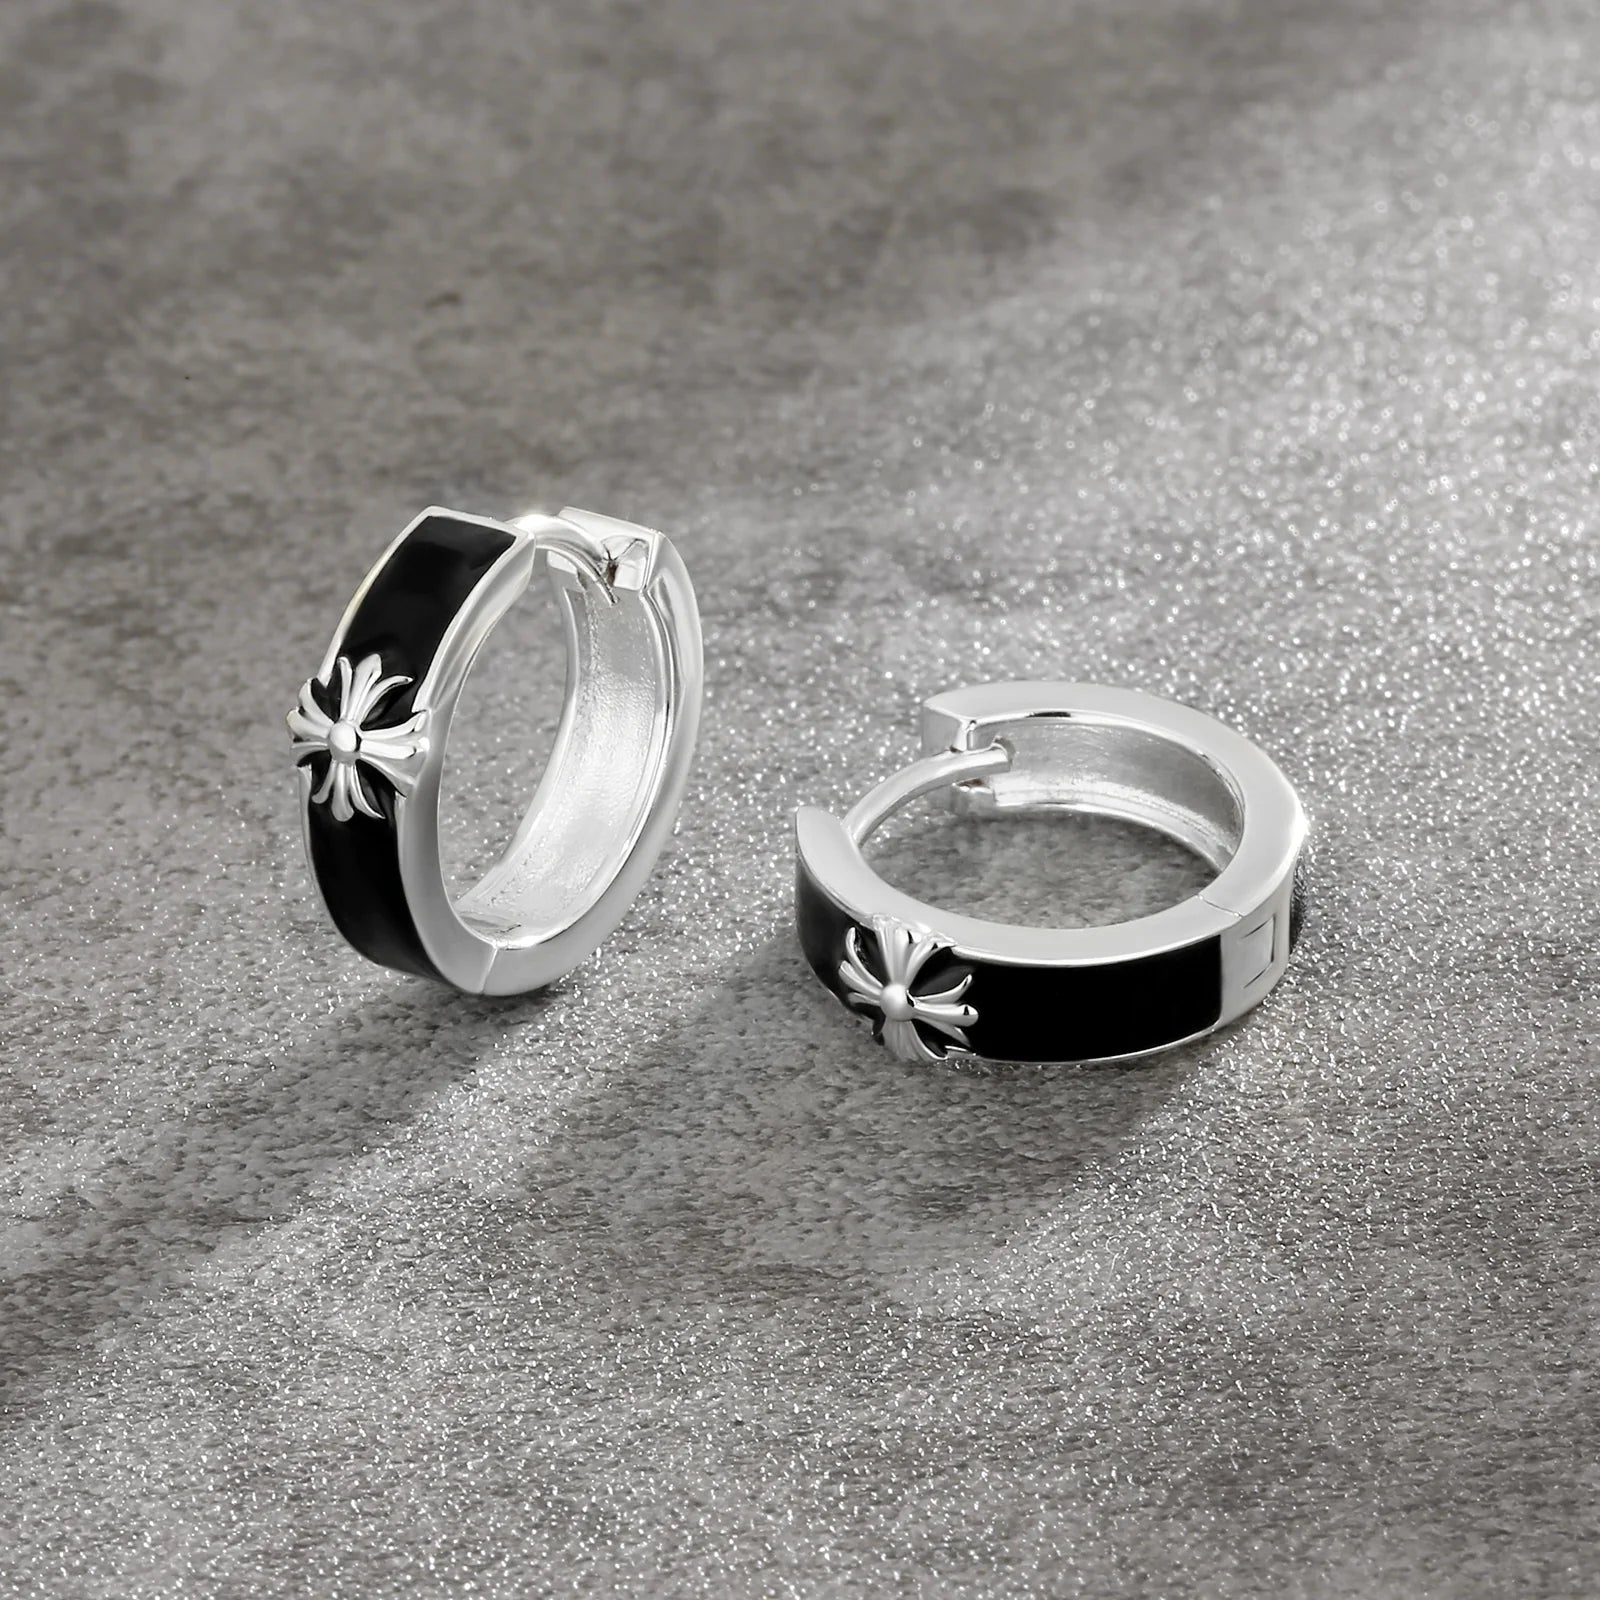 S925 Silver Black Enamel Cross Hoop Earrings in White Gold - 15mm Earrings 